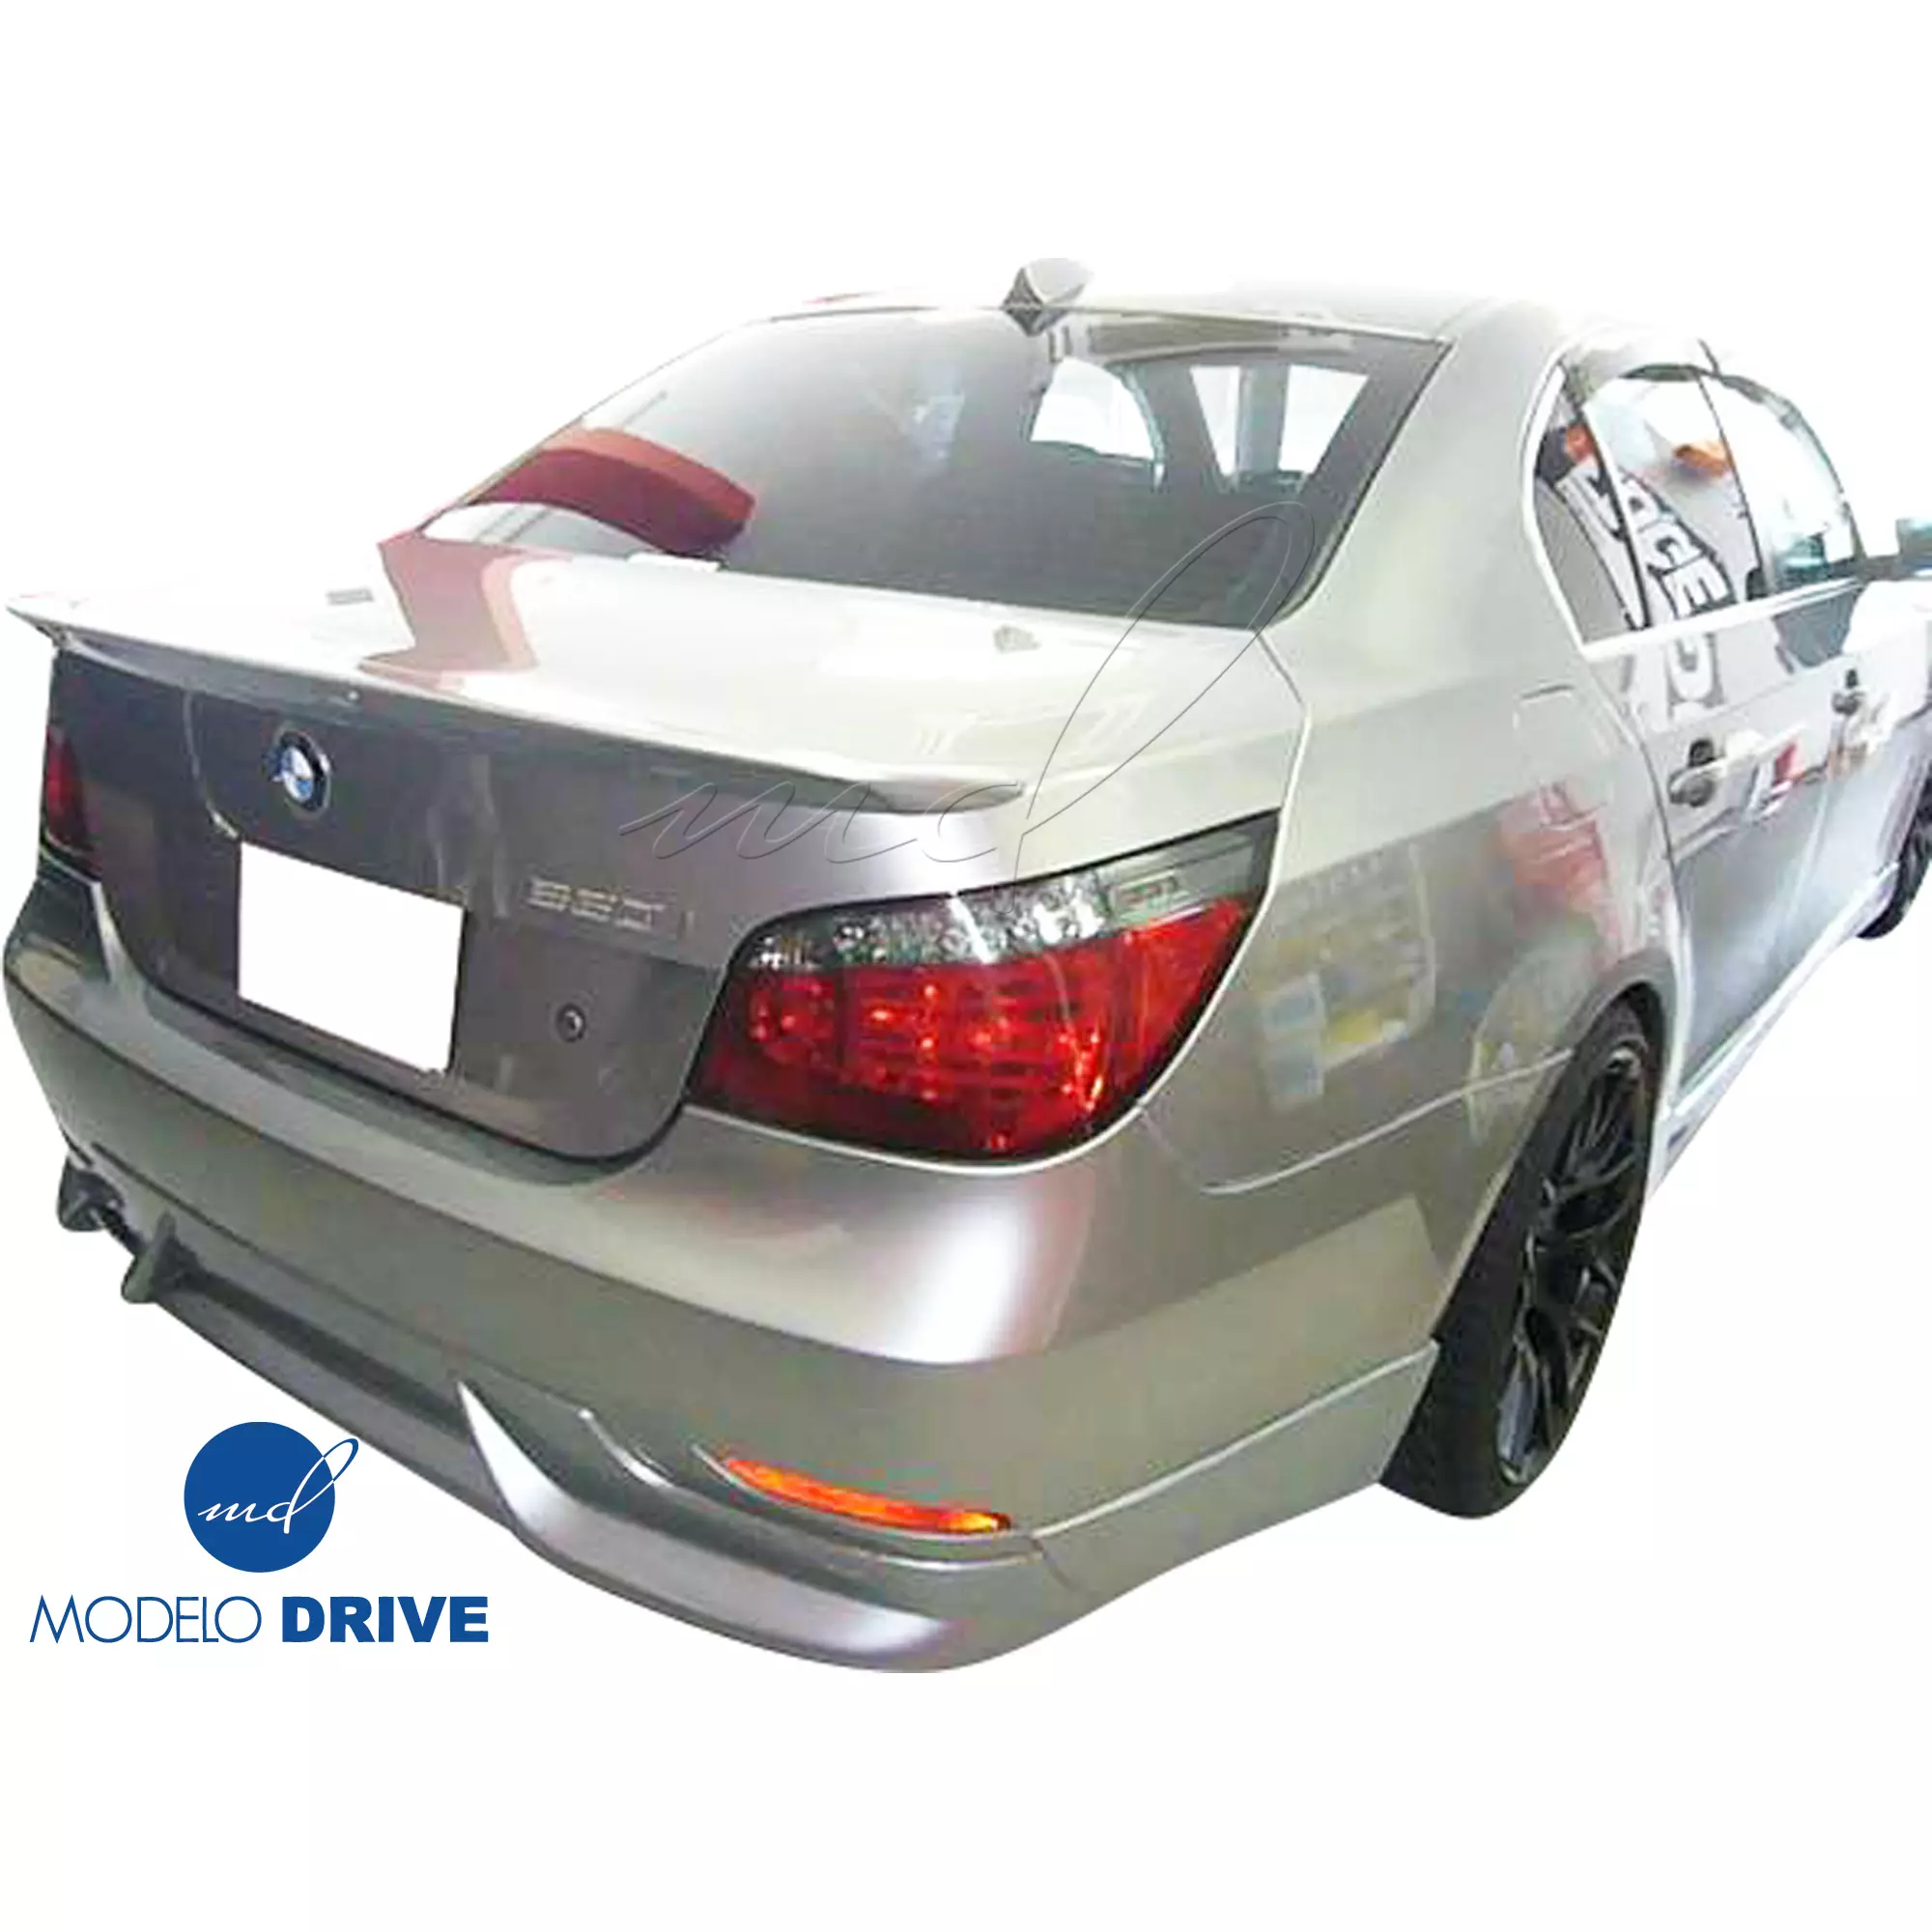 ModeloDrive FRP ASCH Body Kit 4pc > BMW 5-Series E60 2004-2010 > 4dr - Image 10